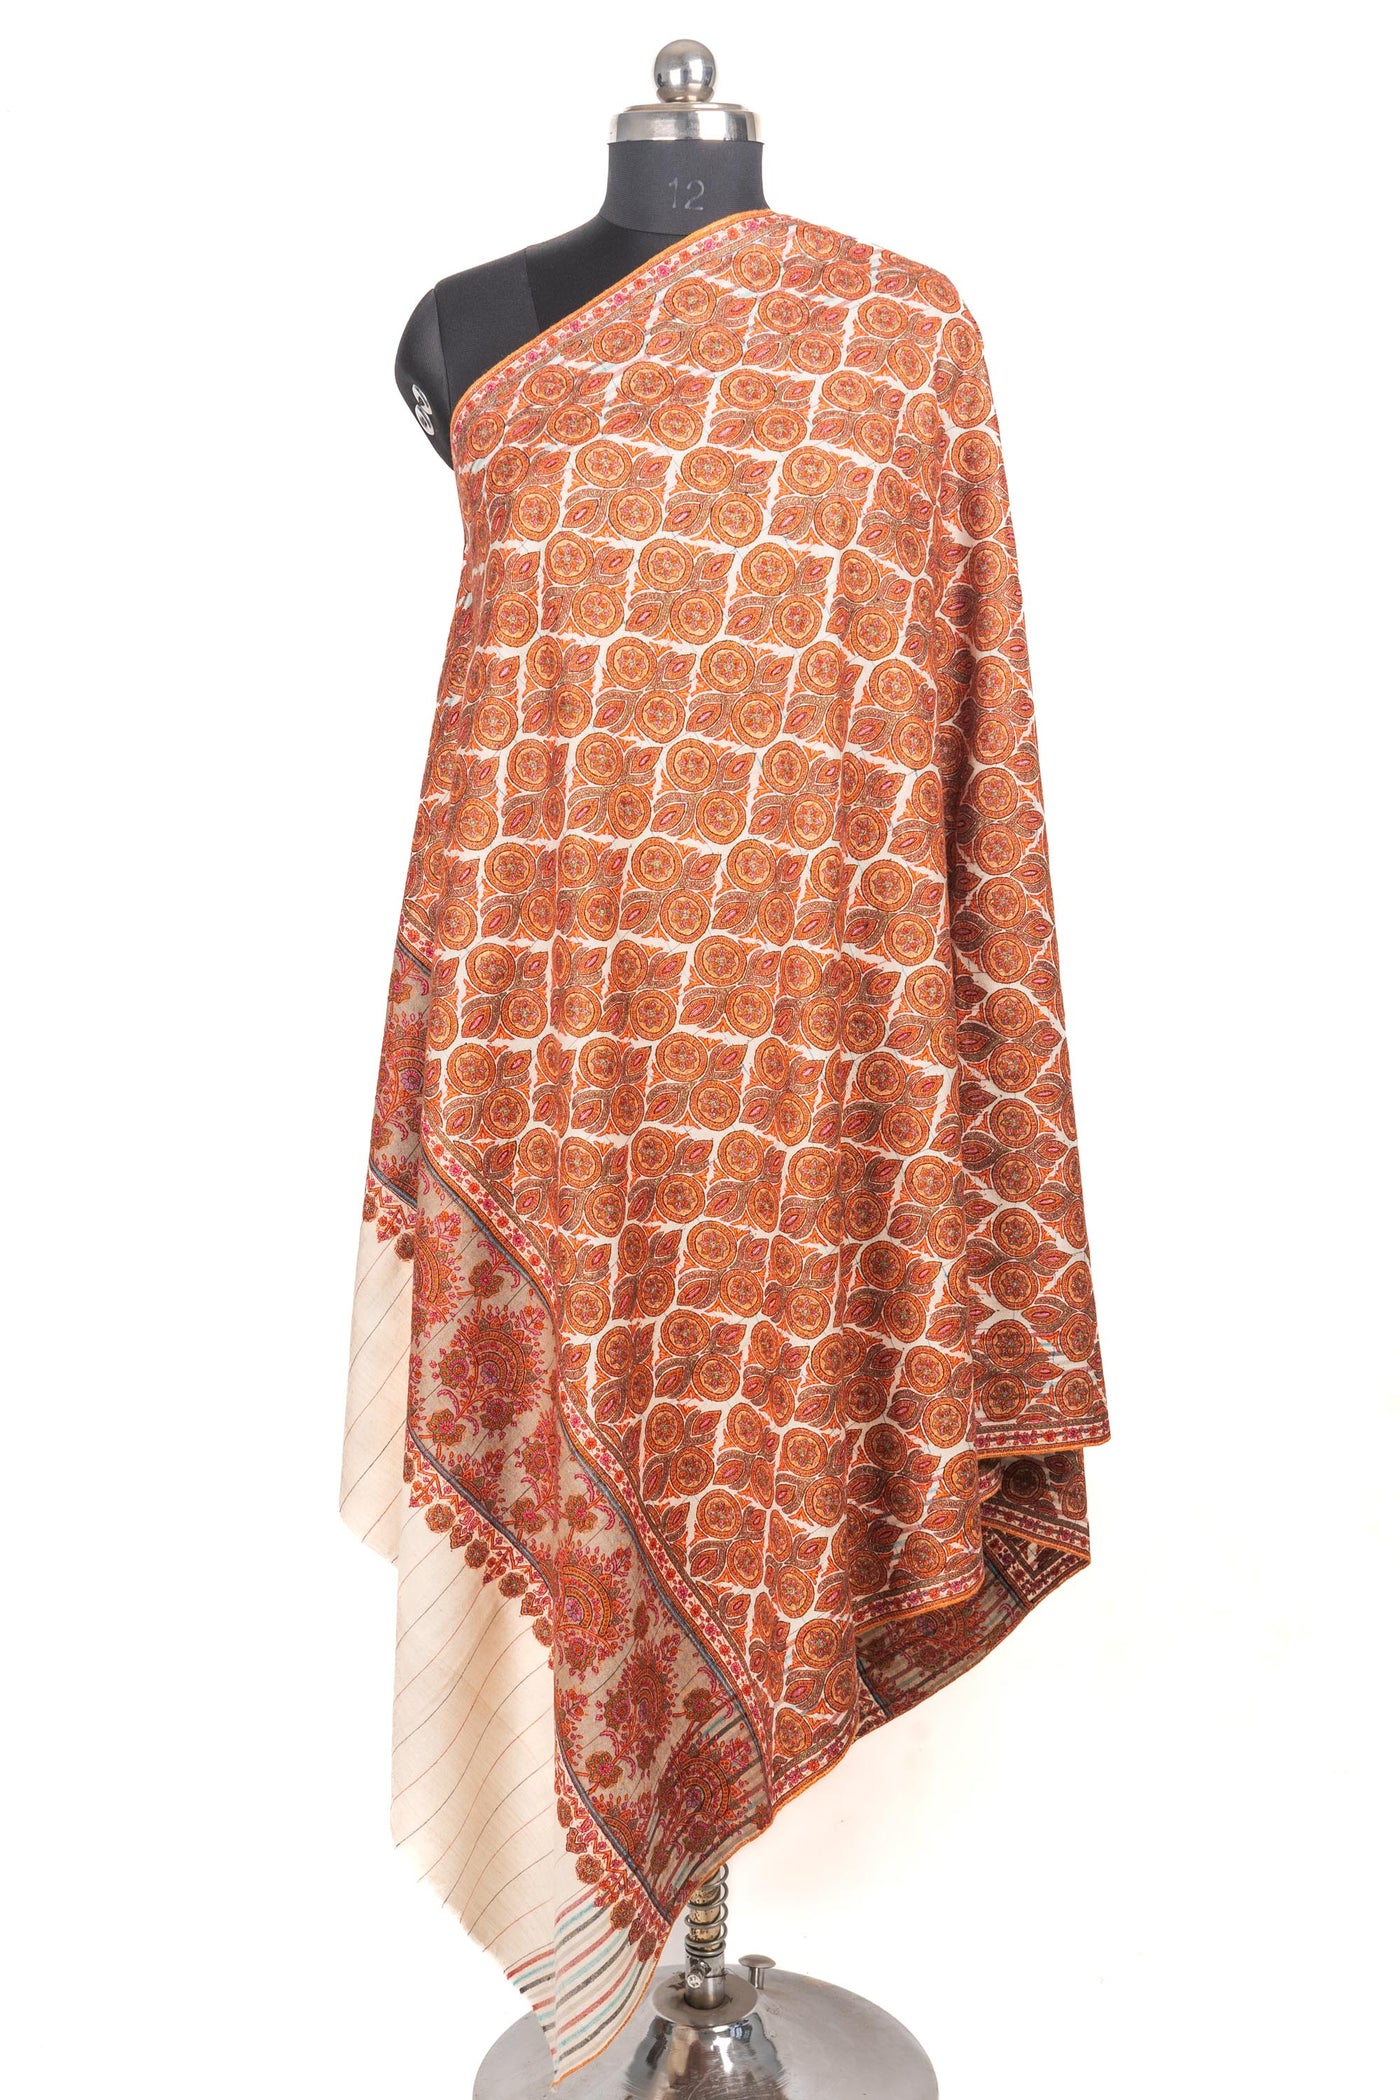 Zar Gulbahar: Pure Pashmina Jamawar Shawl with Heavy sozni Hand-Embroidery